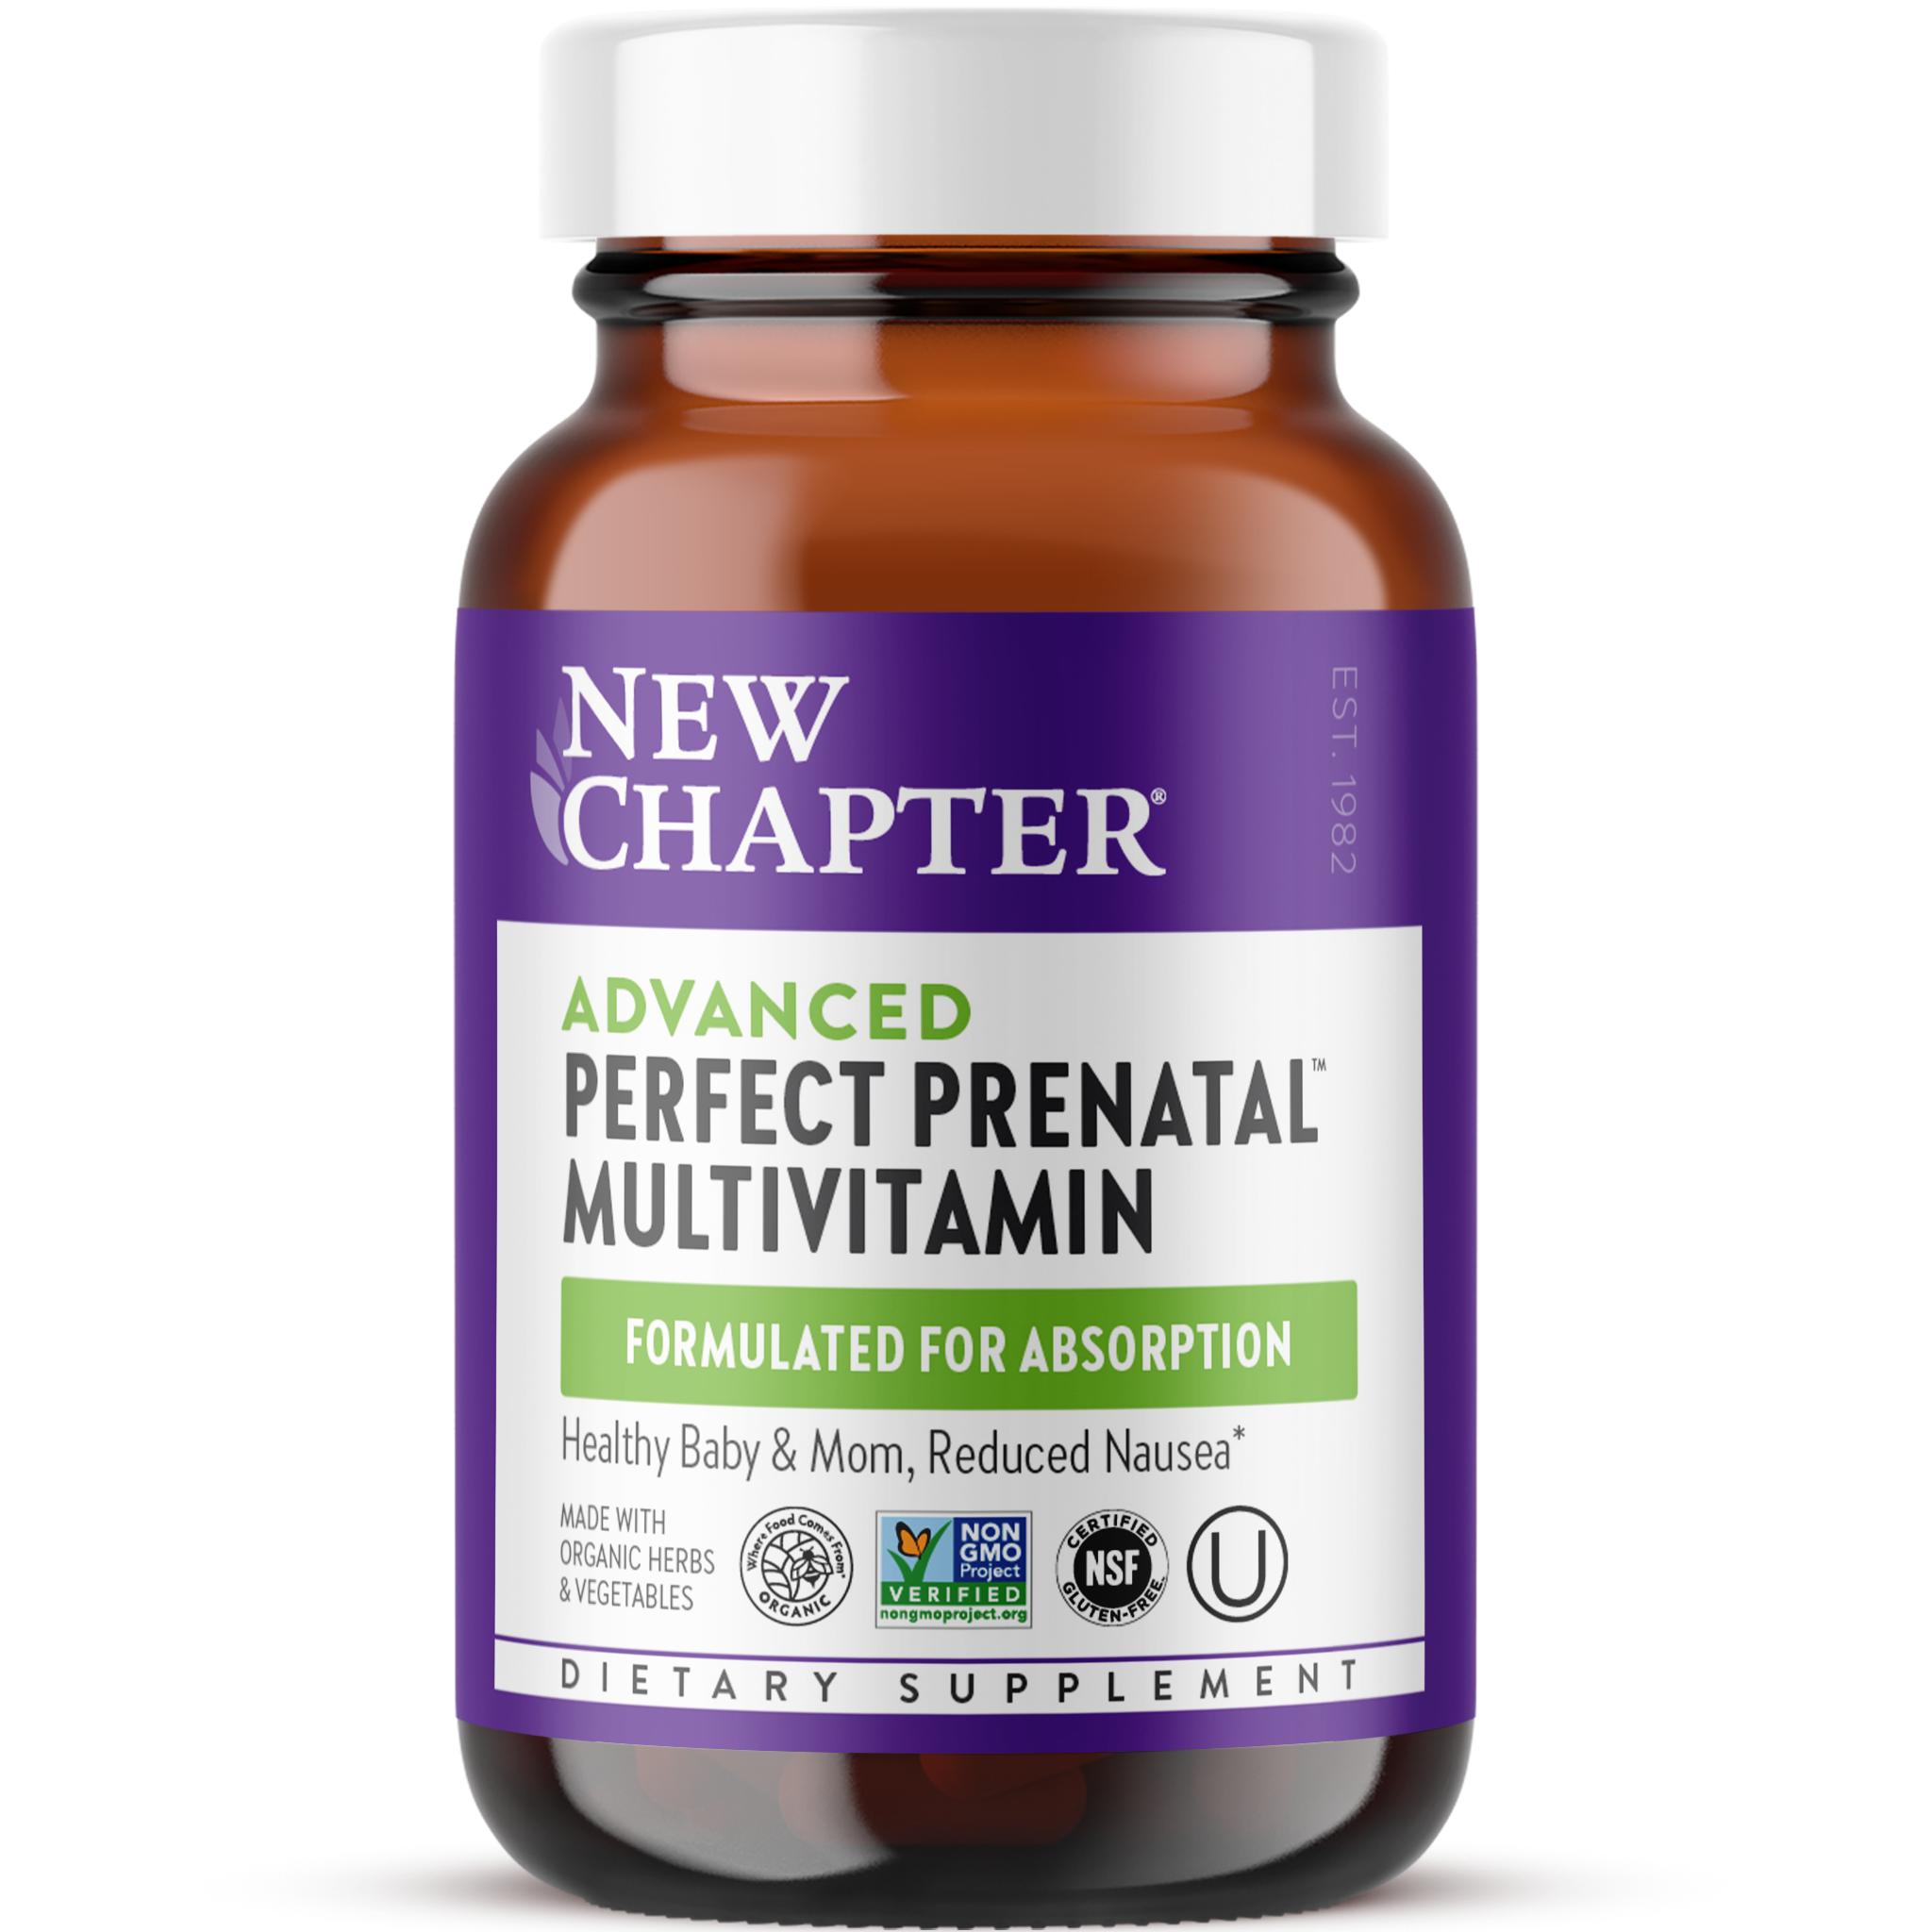 Advanced Perfect Prenatal Multivitamin